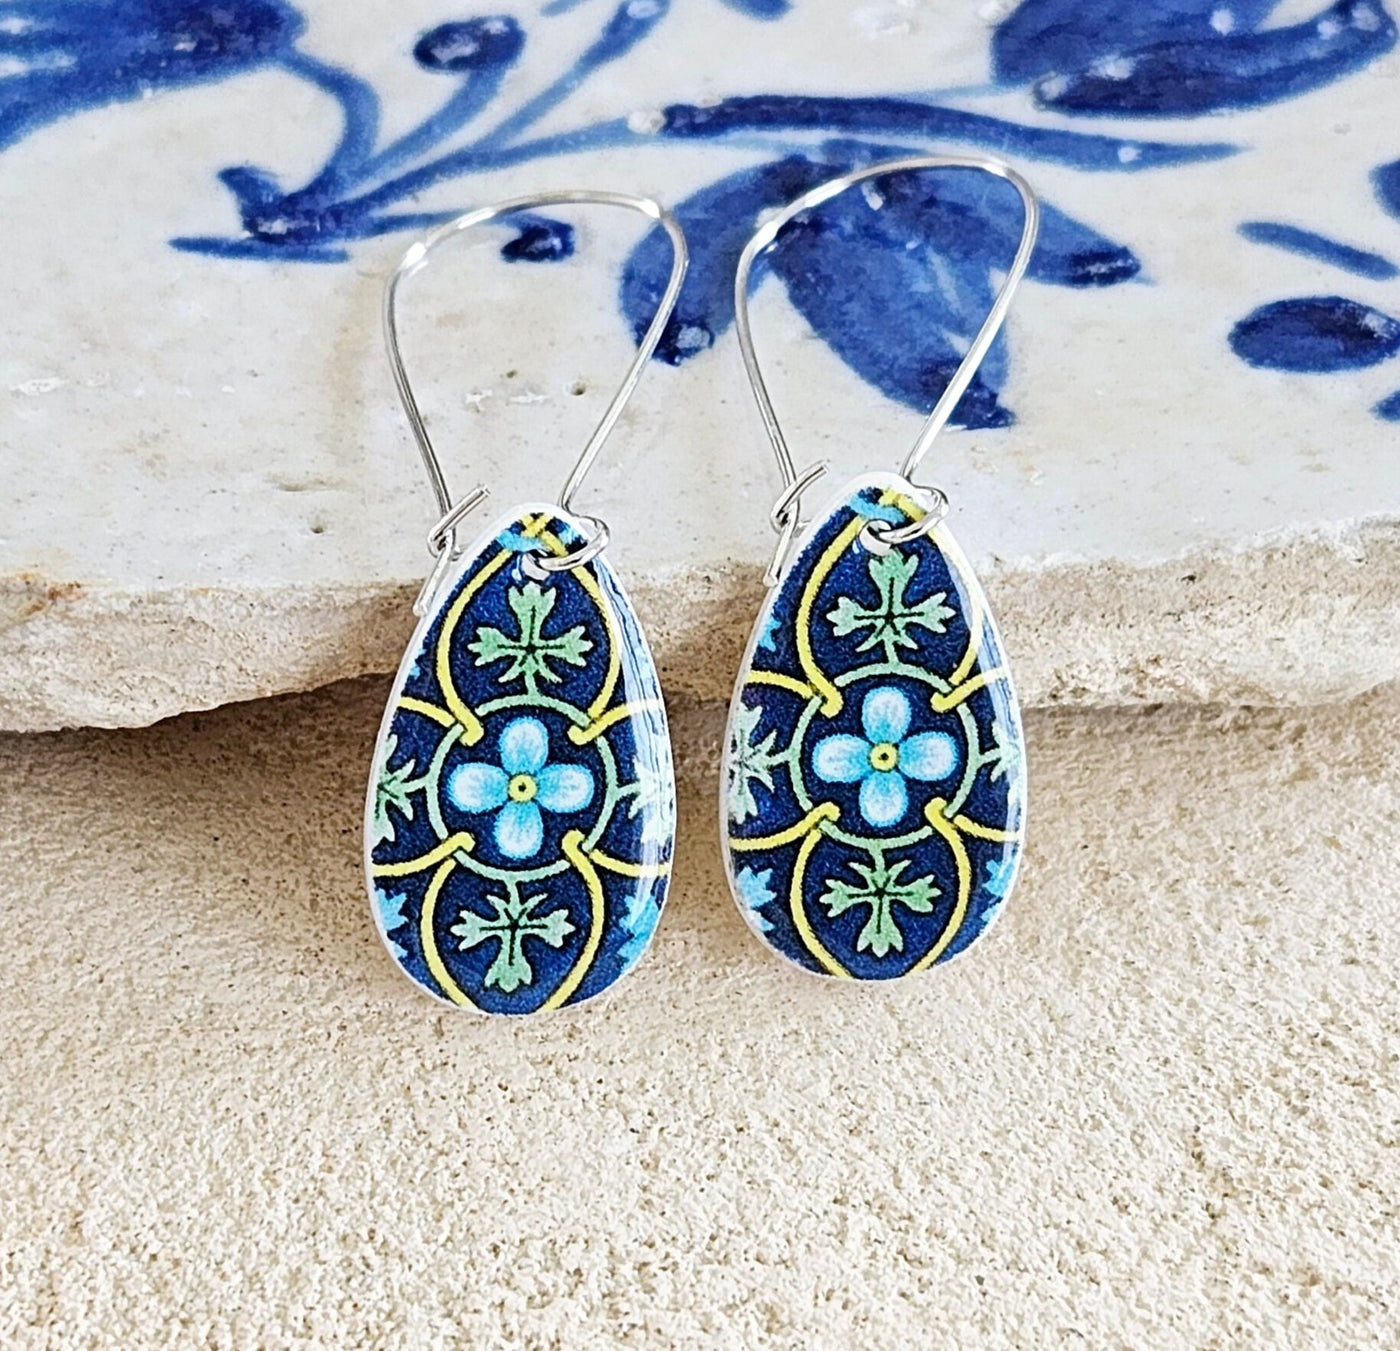 Turquoise Teardrop Mexican Tile Silver Earring Spanish Jewelry Mother Pearl Earring Azulejo Talavera Pattern Blue Yellow Green Tile Teardrop